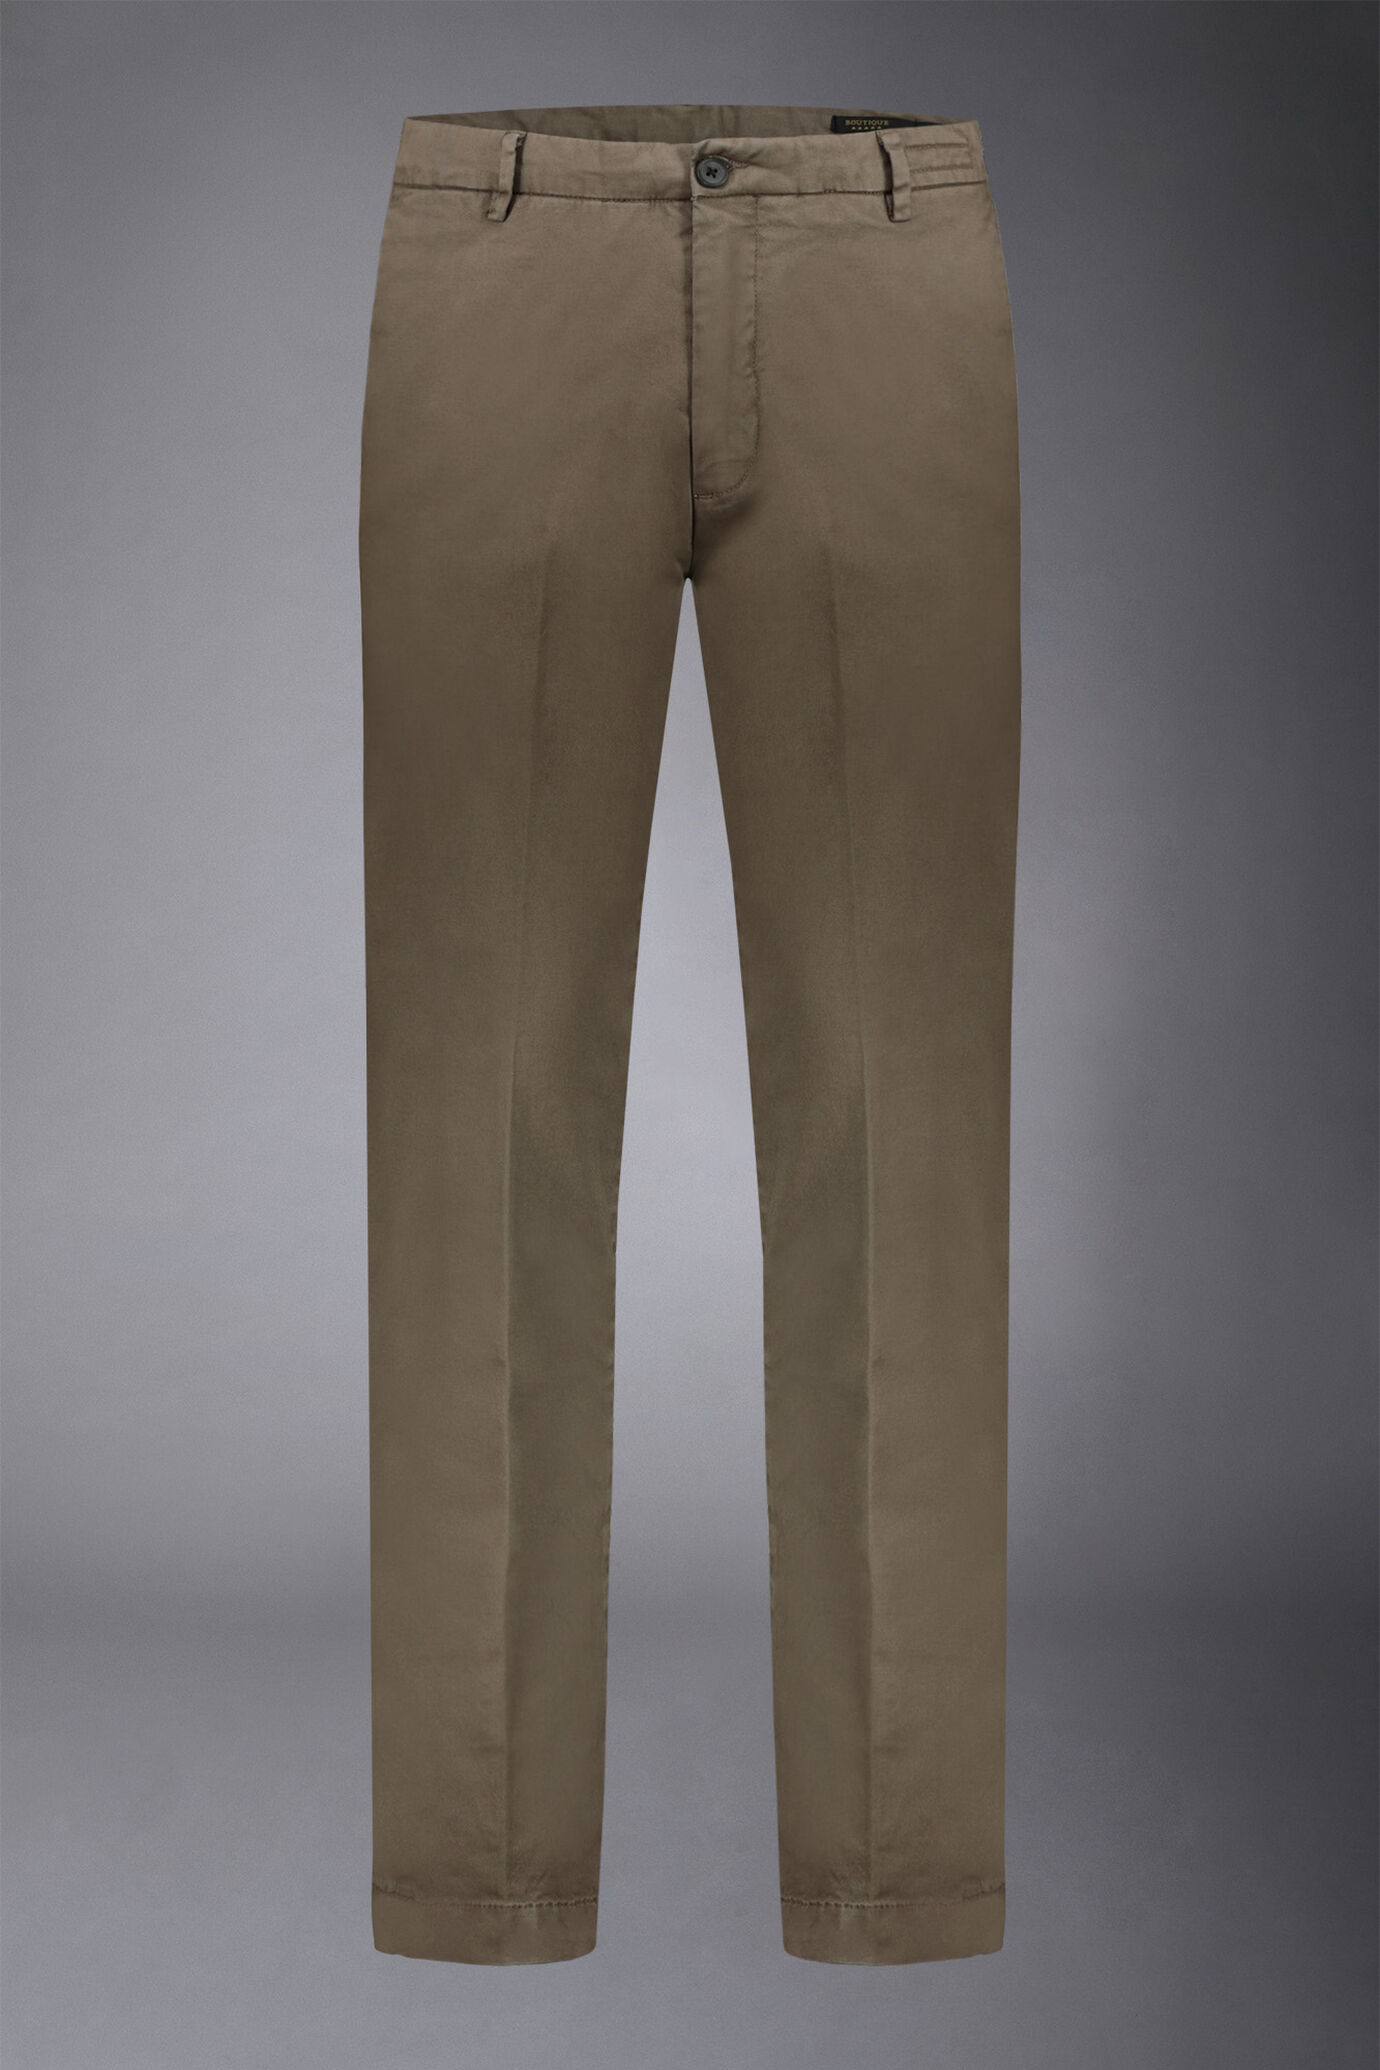 Pantalone chino uomo classico regular fit tessuto twill elasticizzato image number 0